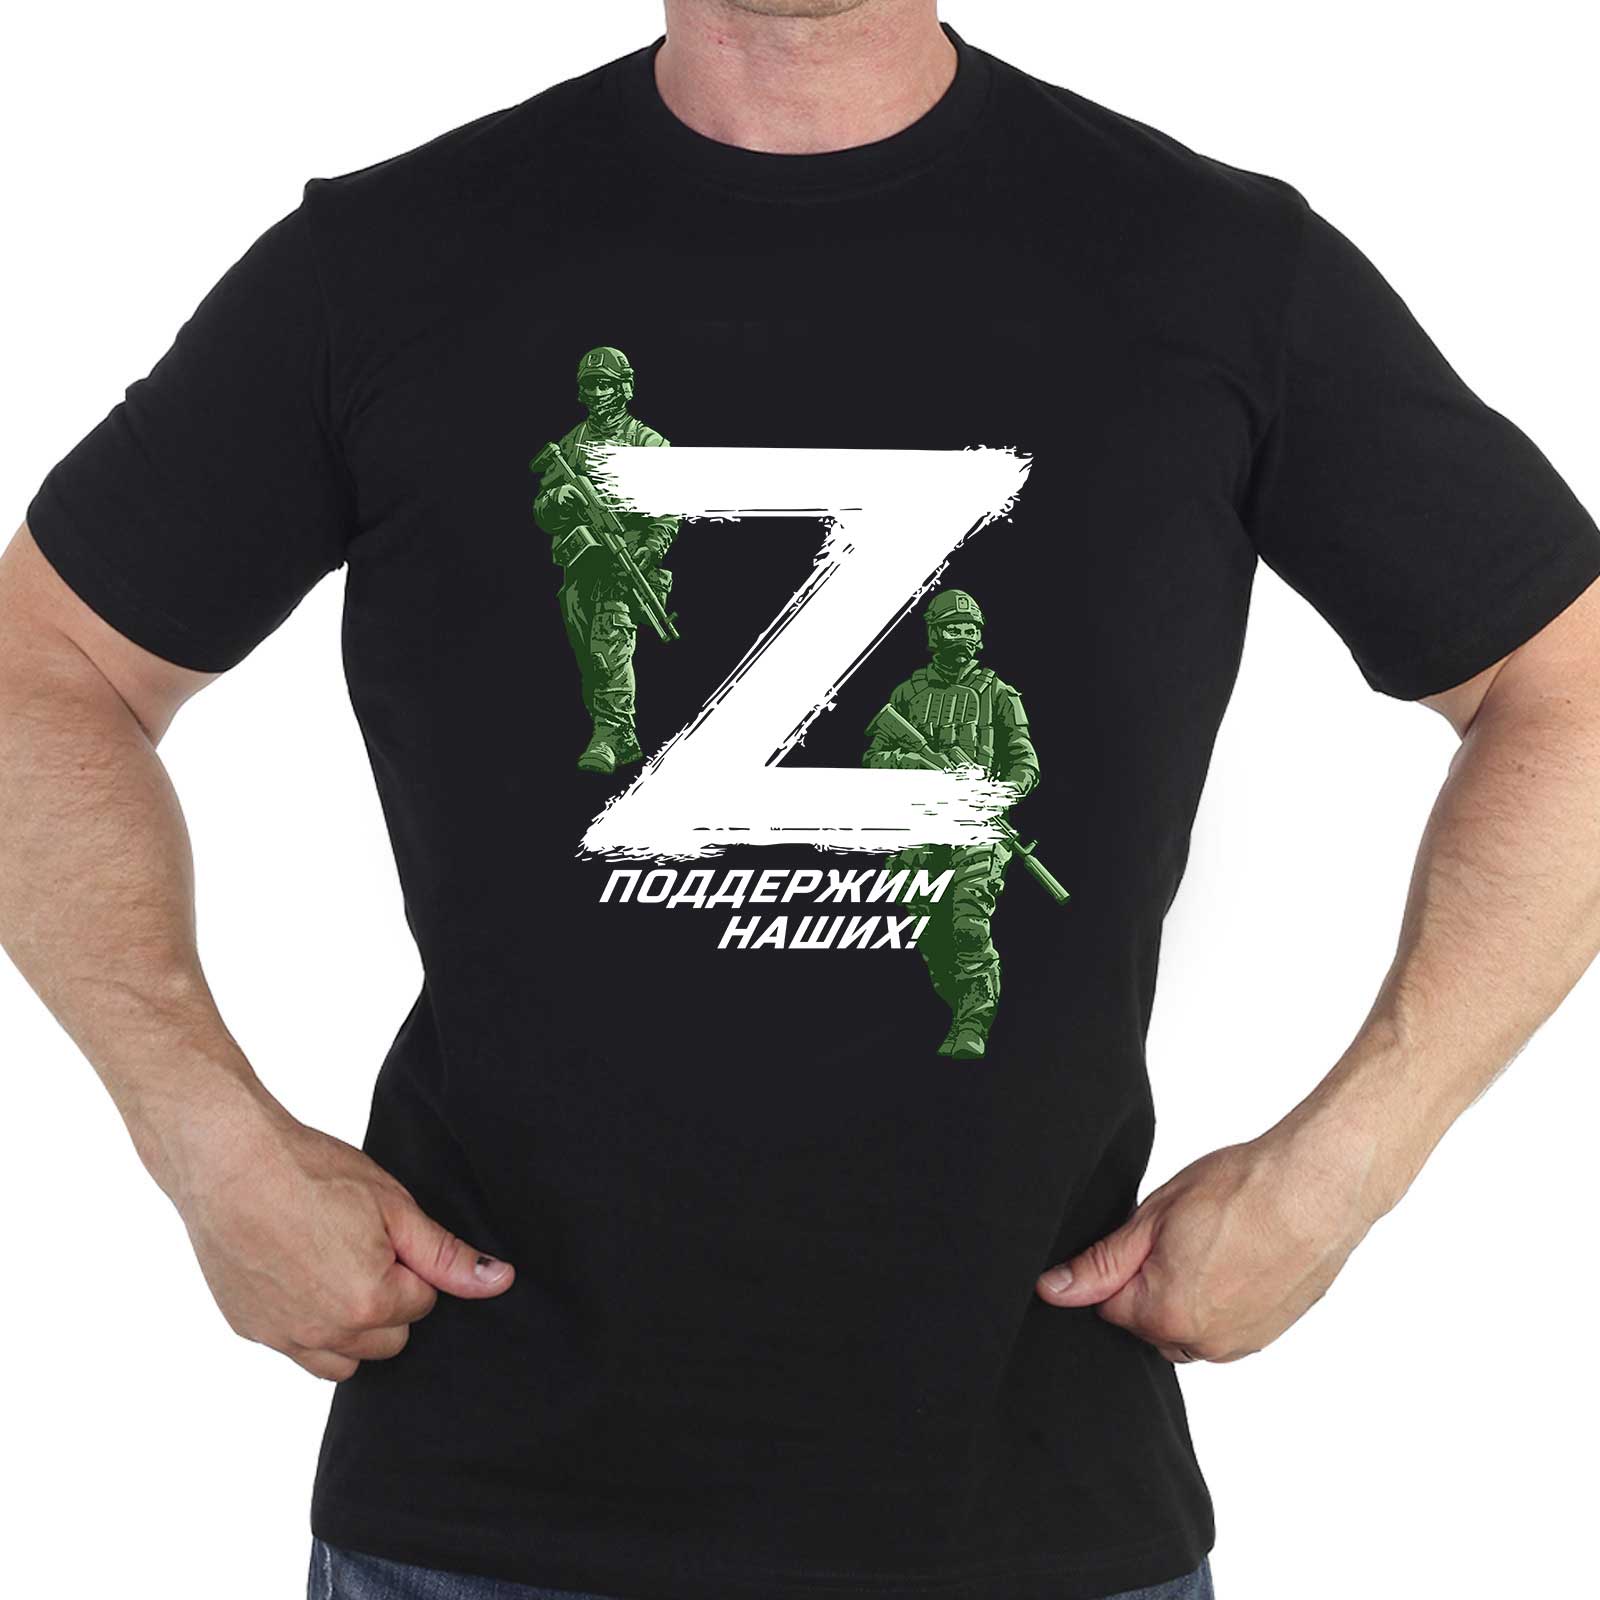 Купить футболку с символом «Z» и надписью «Поддержим наших!»